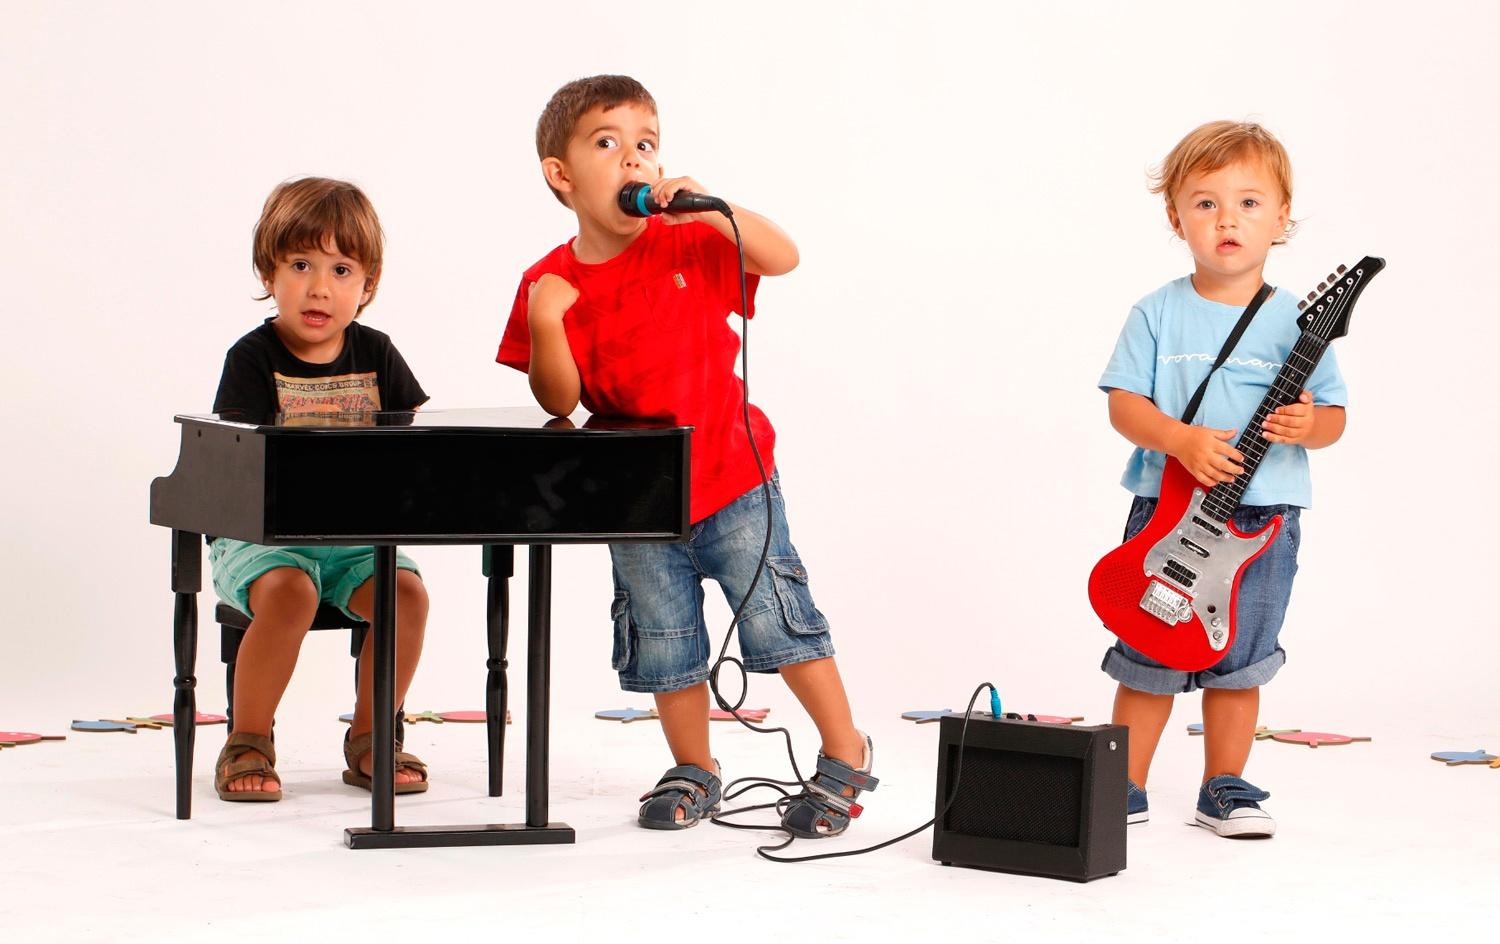 Музыкальные герои играющие на музыкальных инструментах. Дети музыканты. Муз инструменты для детей. Игра на музыкальных инструментах. Дети играют на музыкальных инструментах.